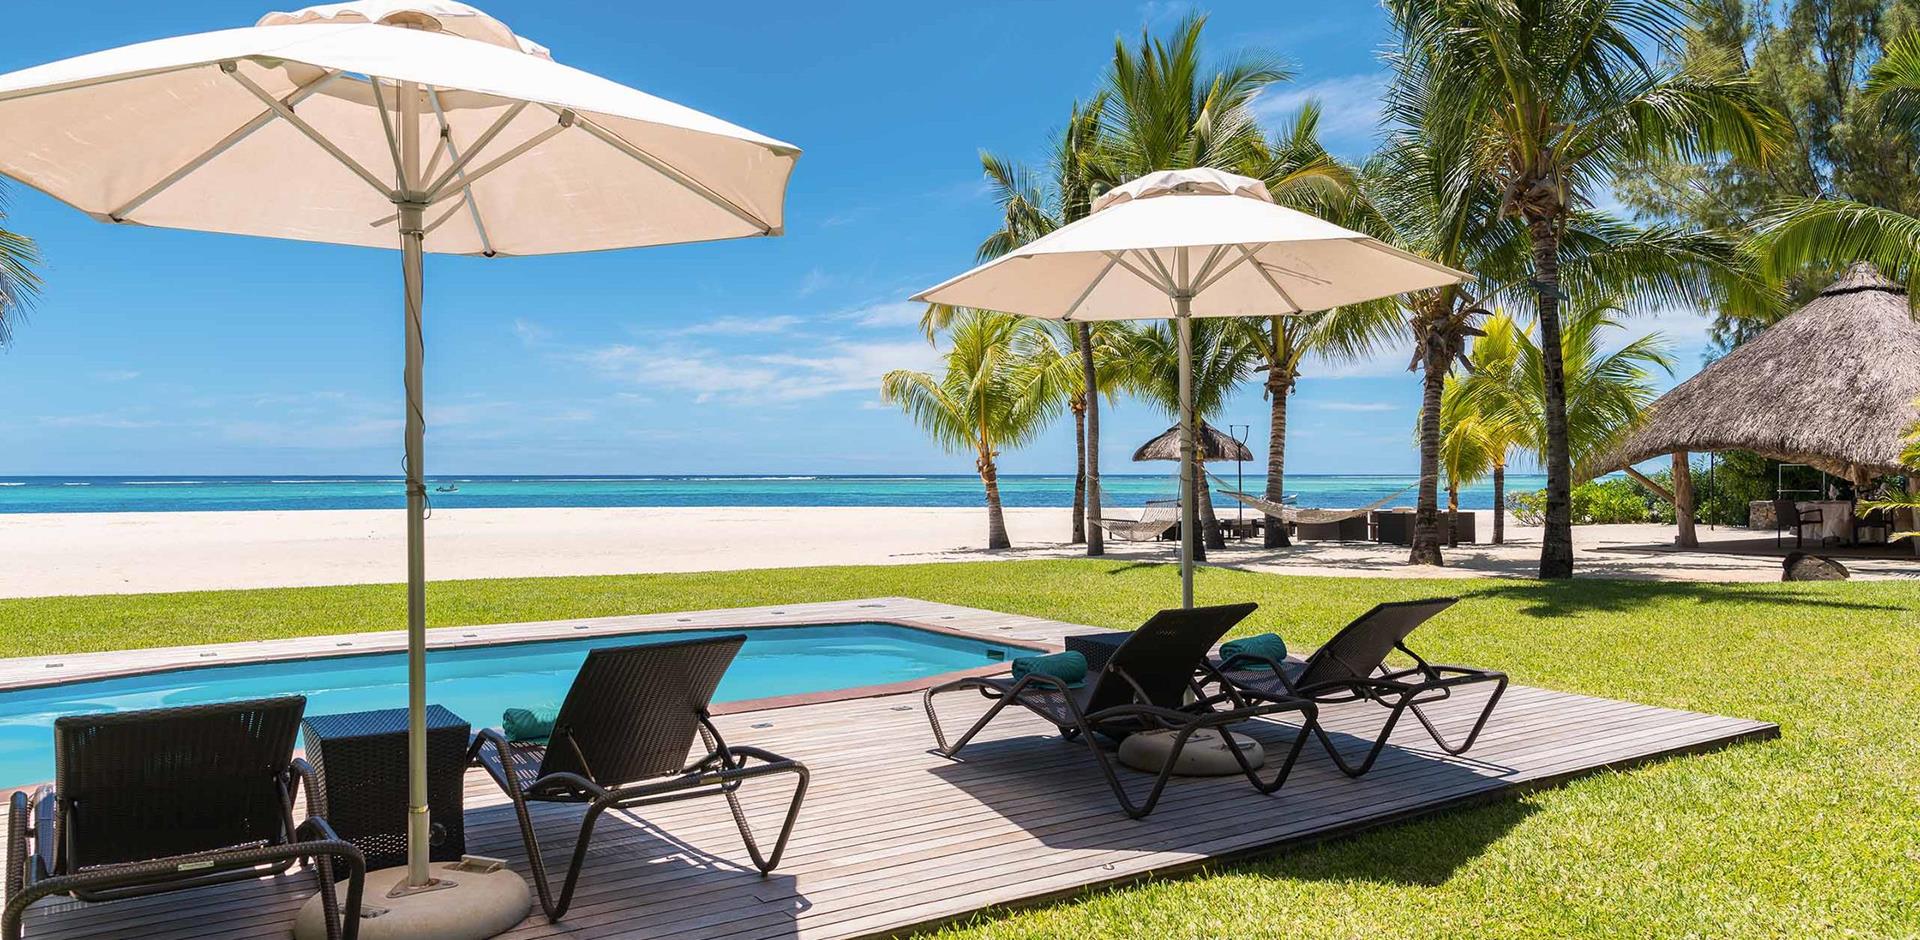 Dinarobin Beachcomber Golf Resort & Spa, Mauritius, Indian Ocean, A&K